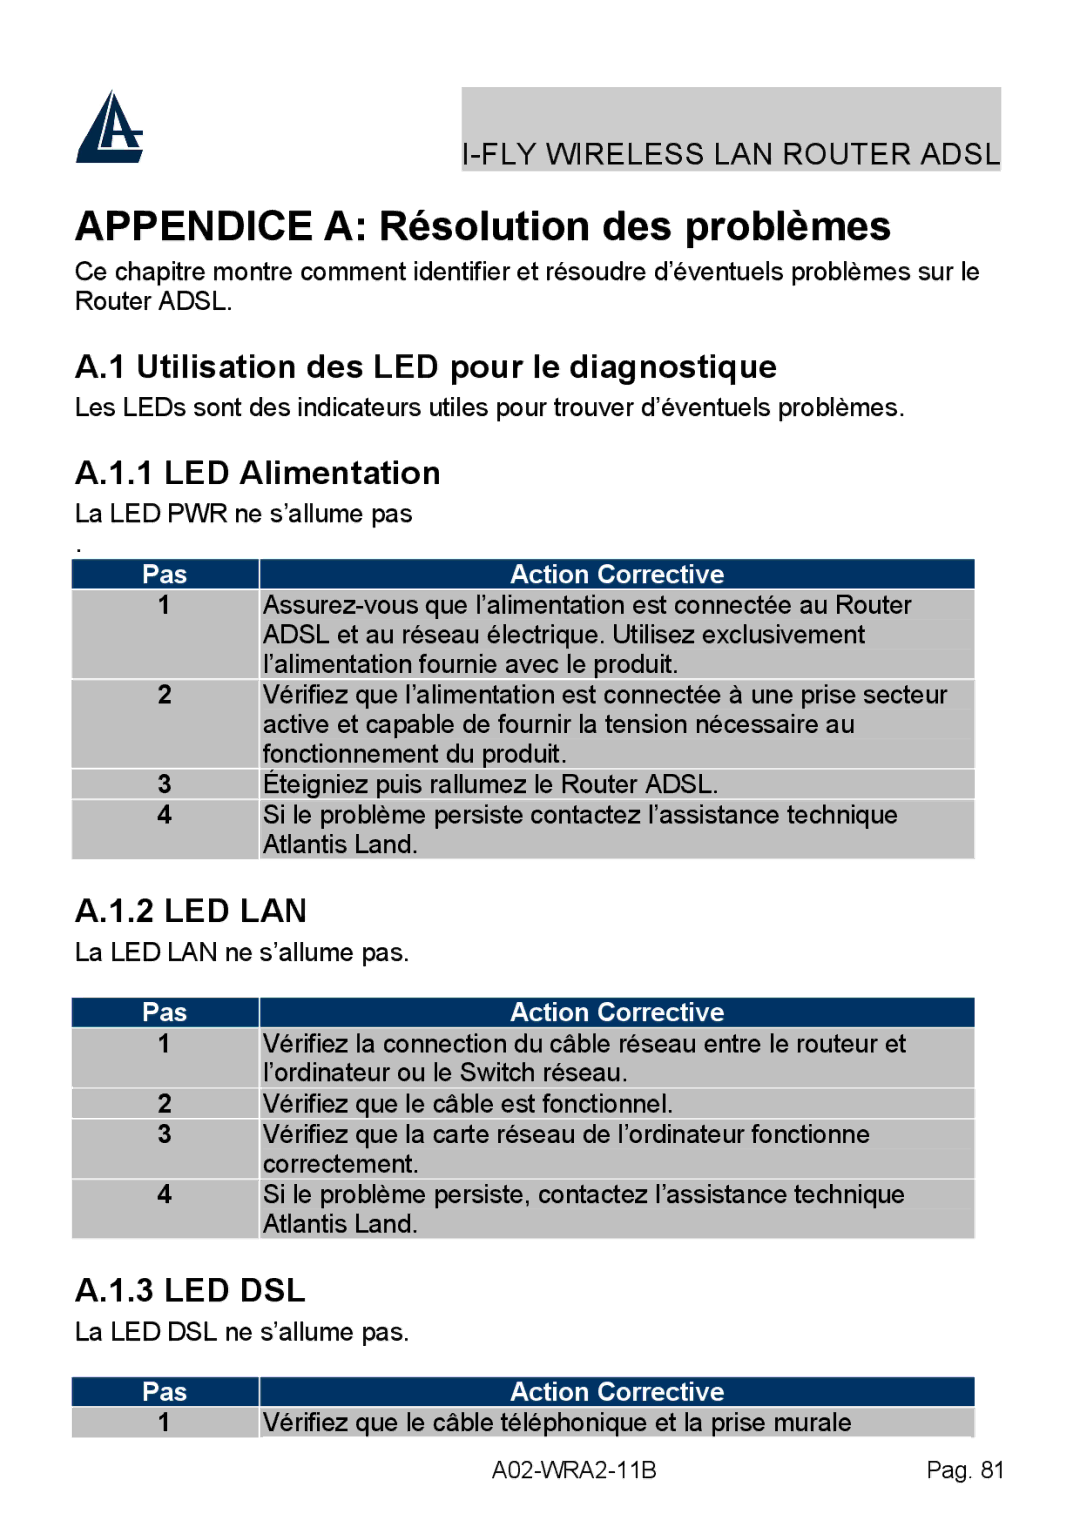 Bissell A02-WRA2-11B Appendice a Résolution des problèmes, Utilisation des LED pour le diagnostique, LED Alimentation 